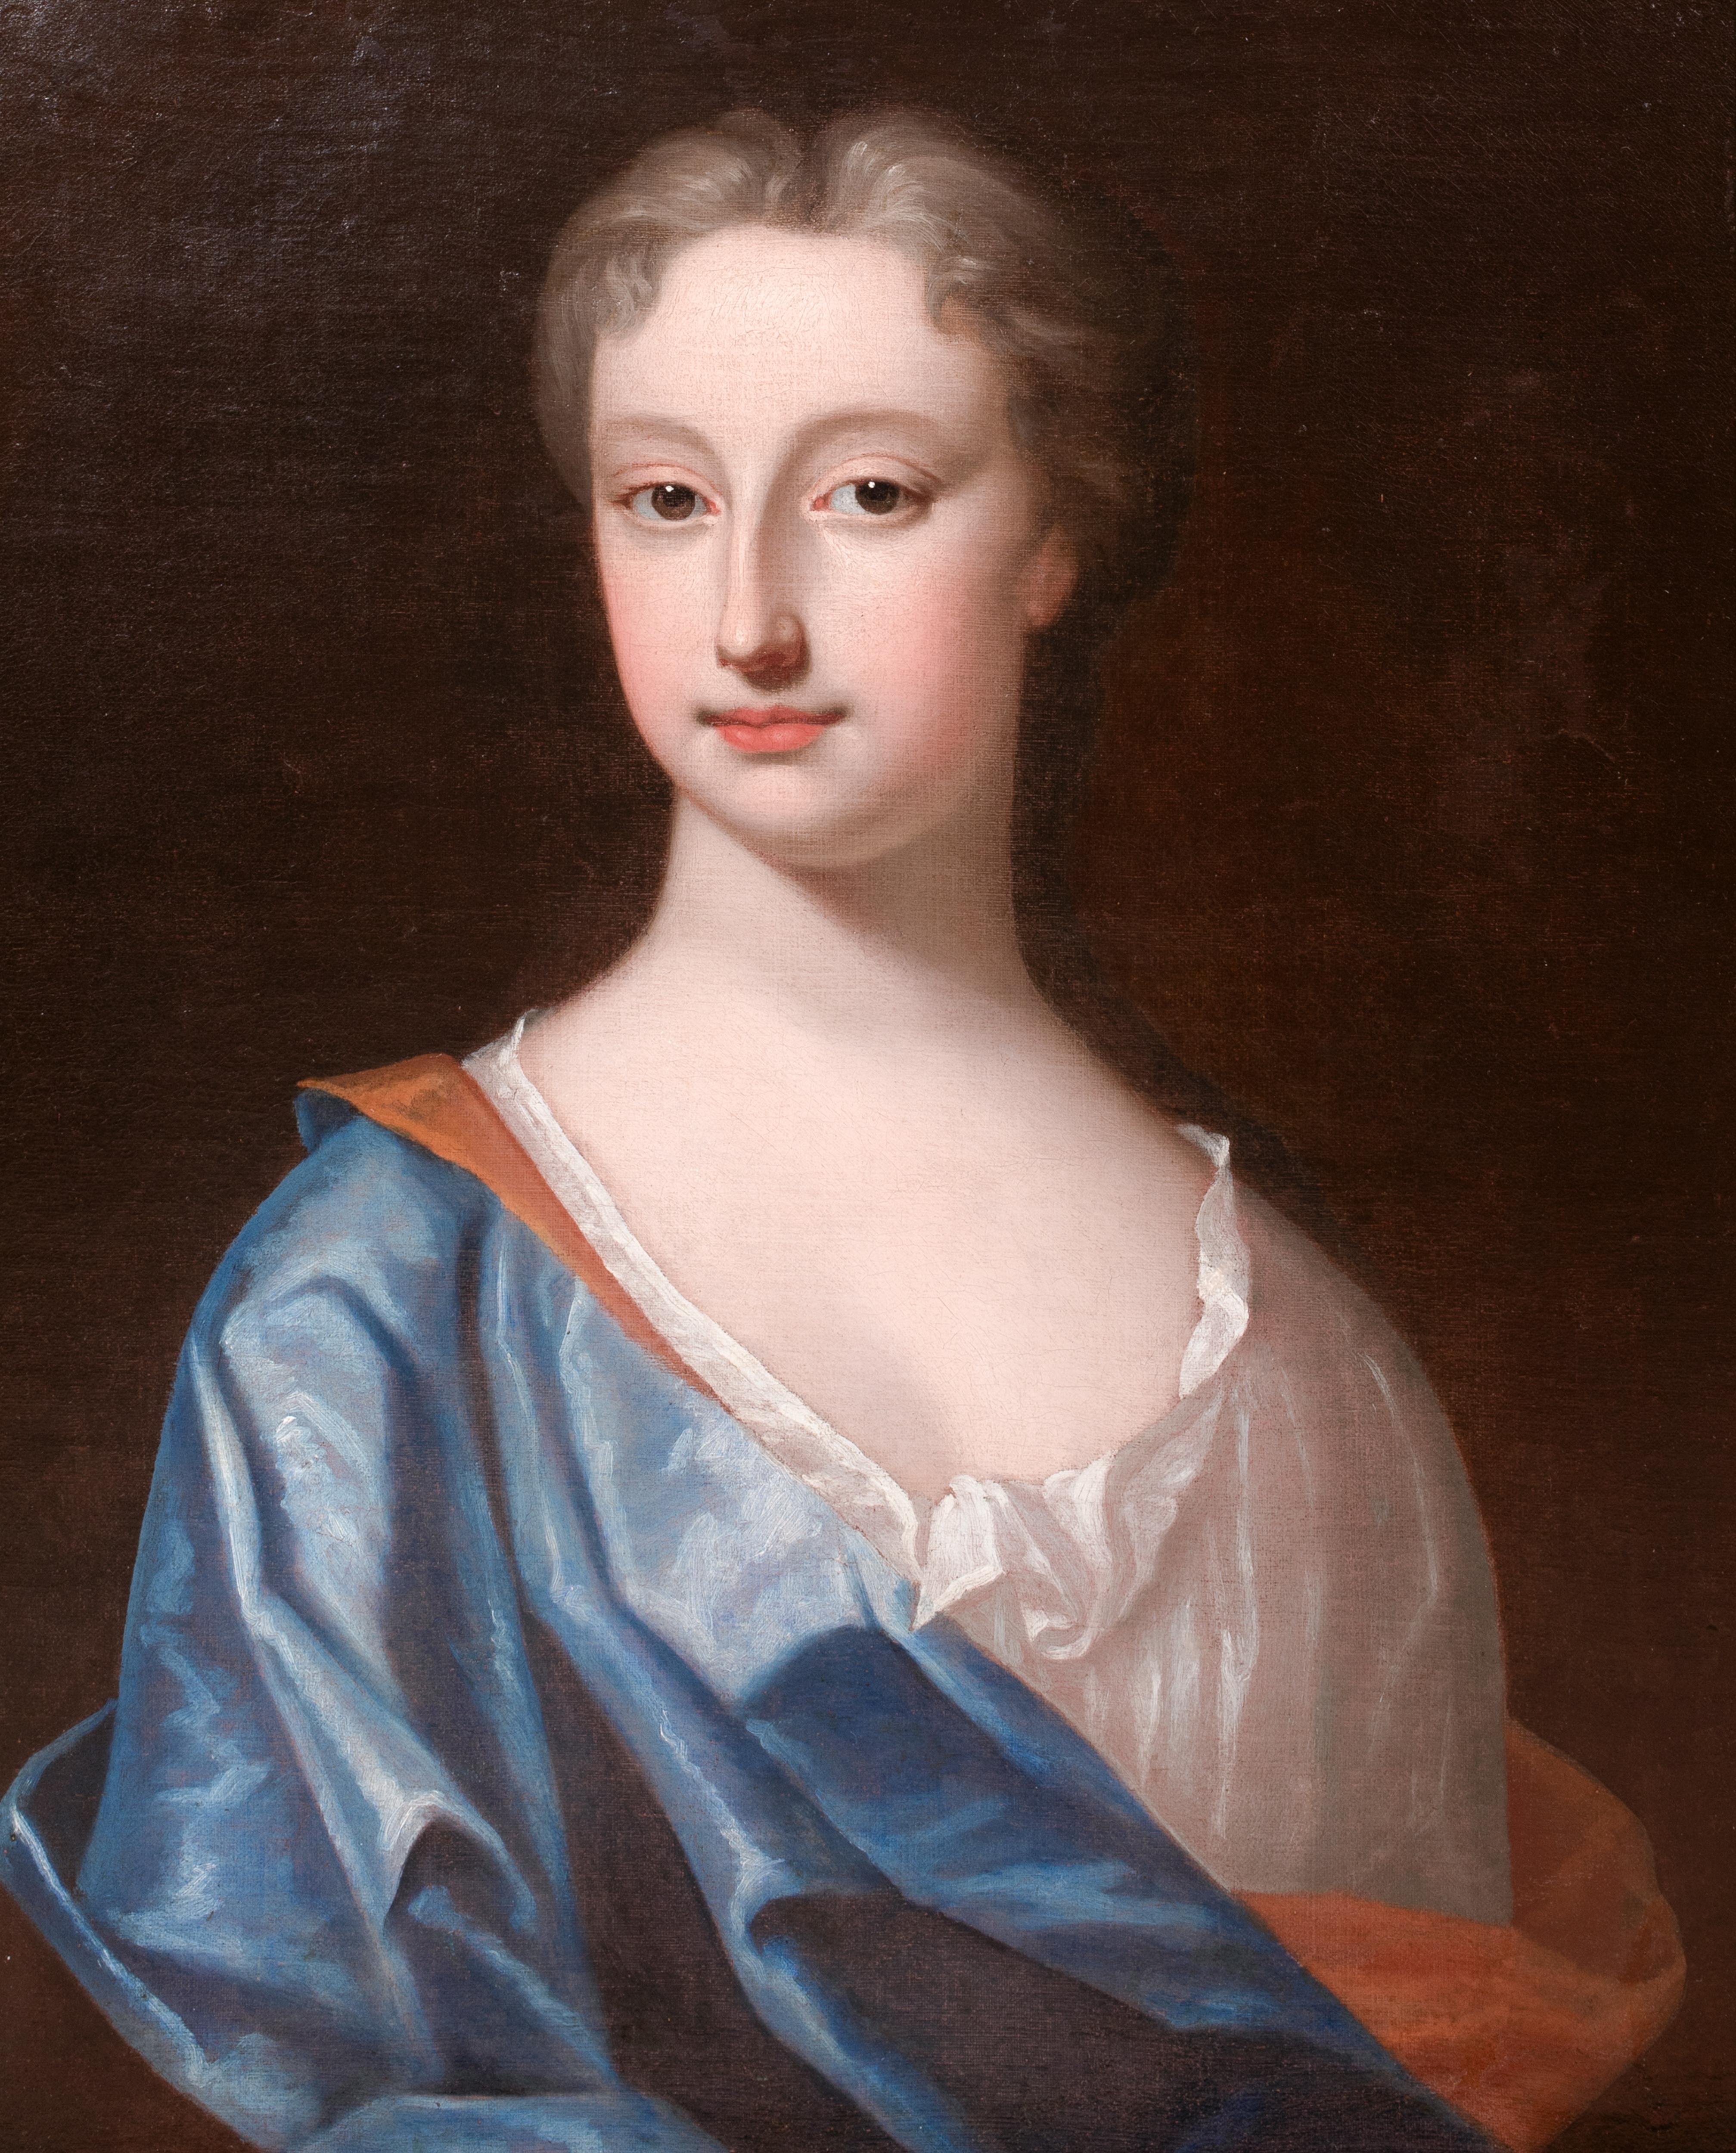 Porträt der ehrenwerten Frau Elizabeth Tufton (Wilbraham), um 1710

Sir Godfrey Kneller (1646-1723)

Großes Porträt der ehrenwerten Mrs Elizabeth Tufton (geb. Wilbraham) um 1710, Öl auf Leinwand aus dem Studio von Sir Godfrey Kneller. Hervorragende